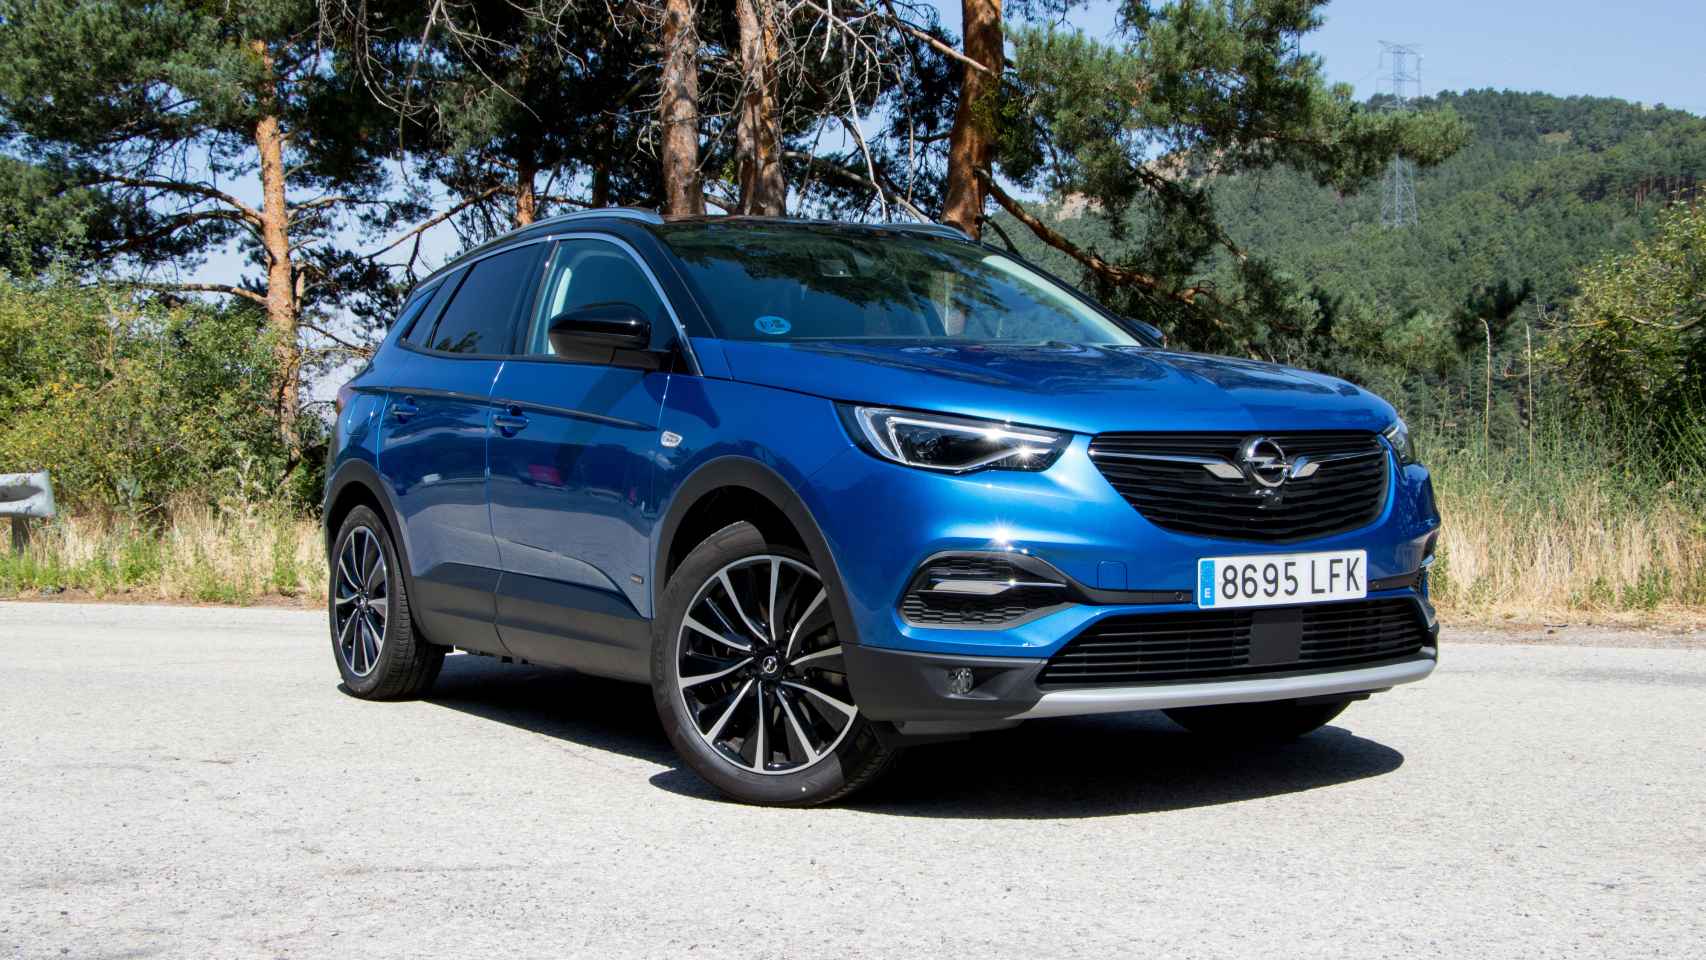 Opel incorpora a su gama SUV la versión híbrida enchufable del Grandland X.